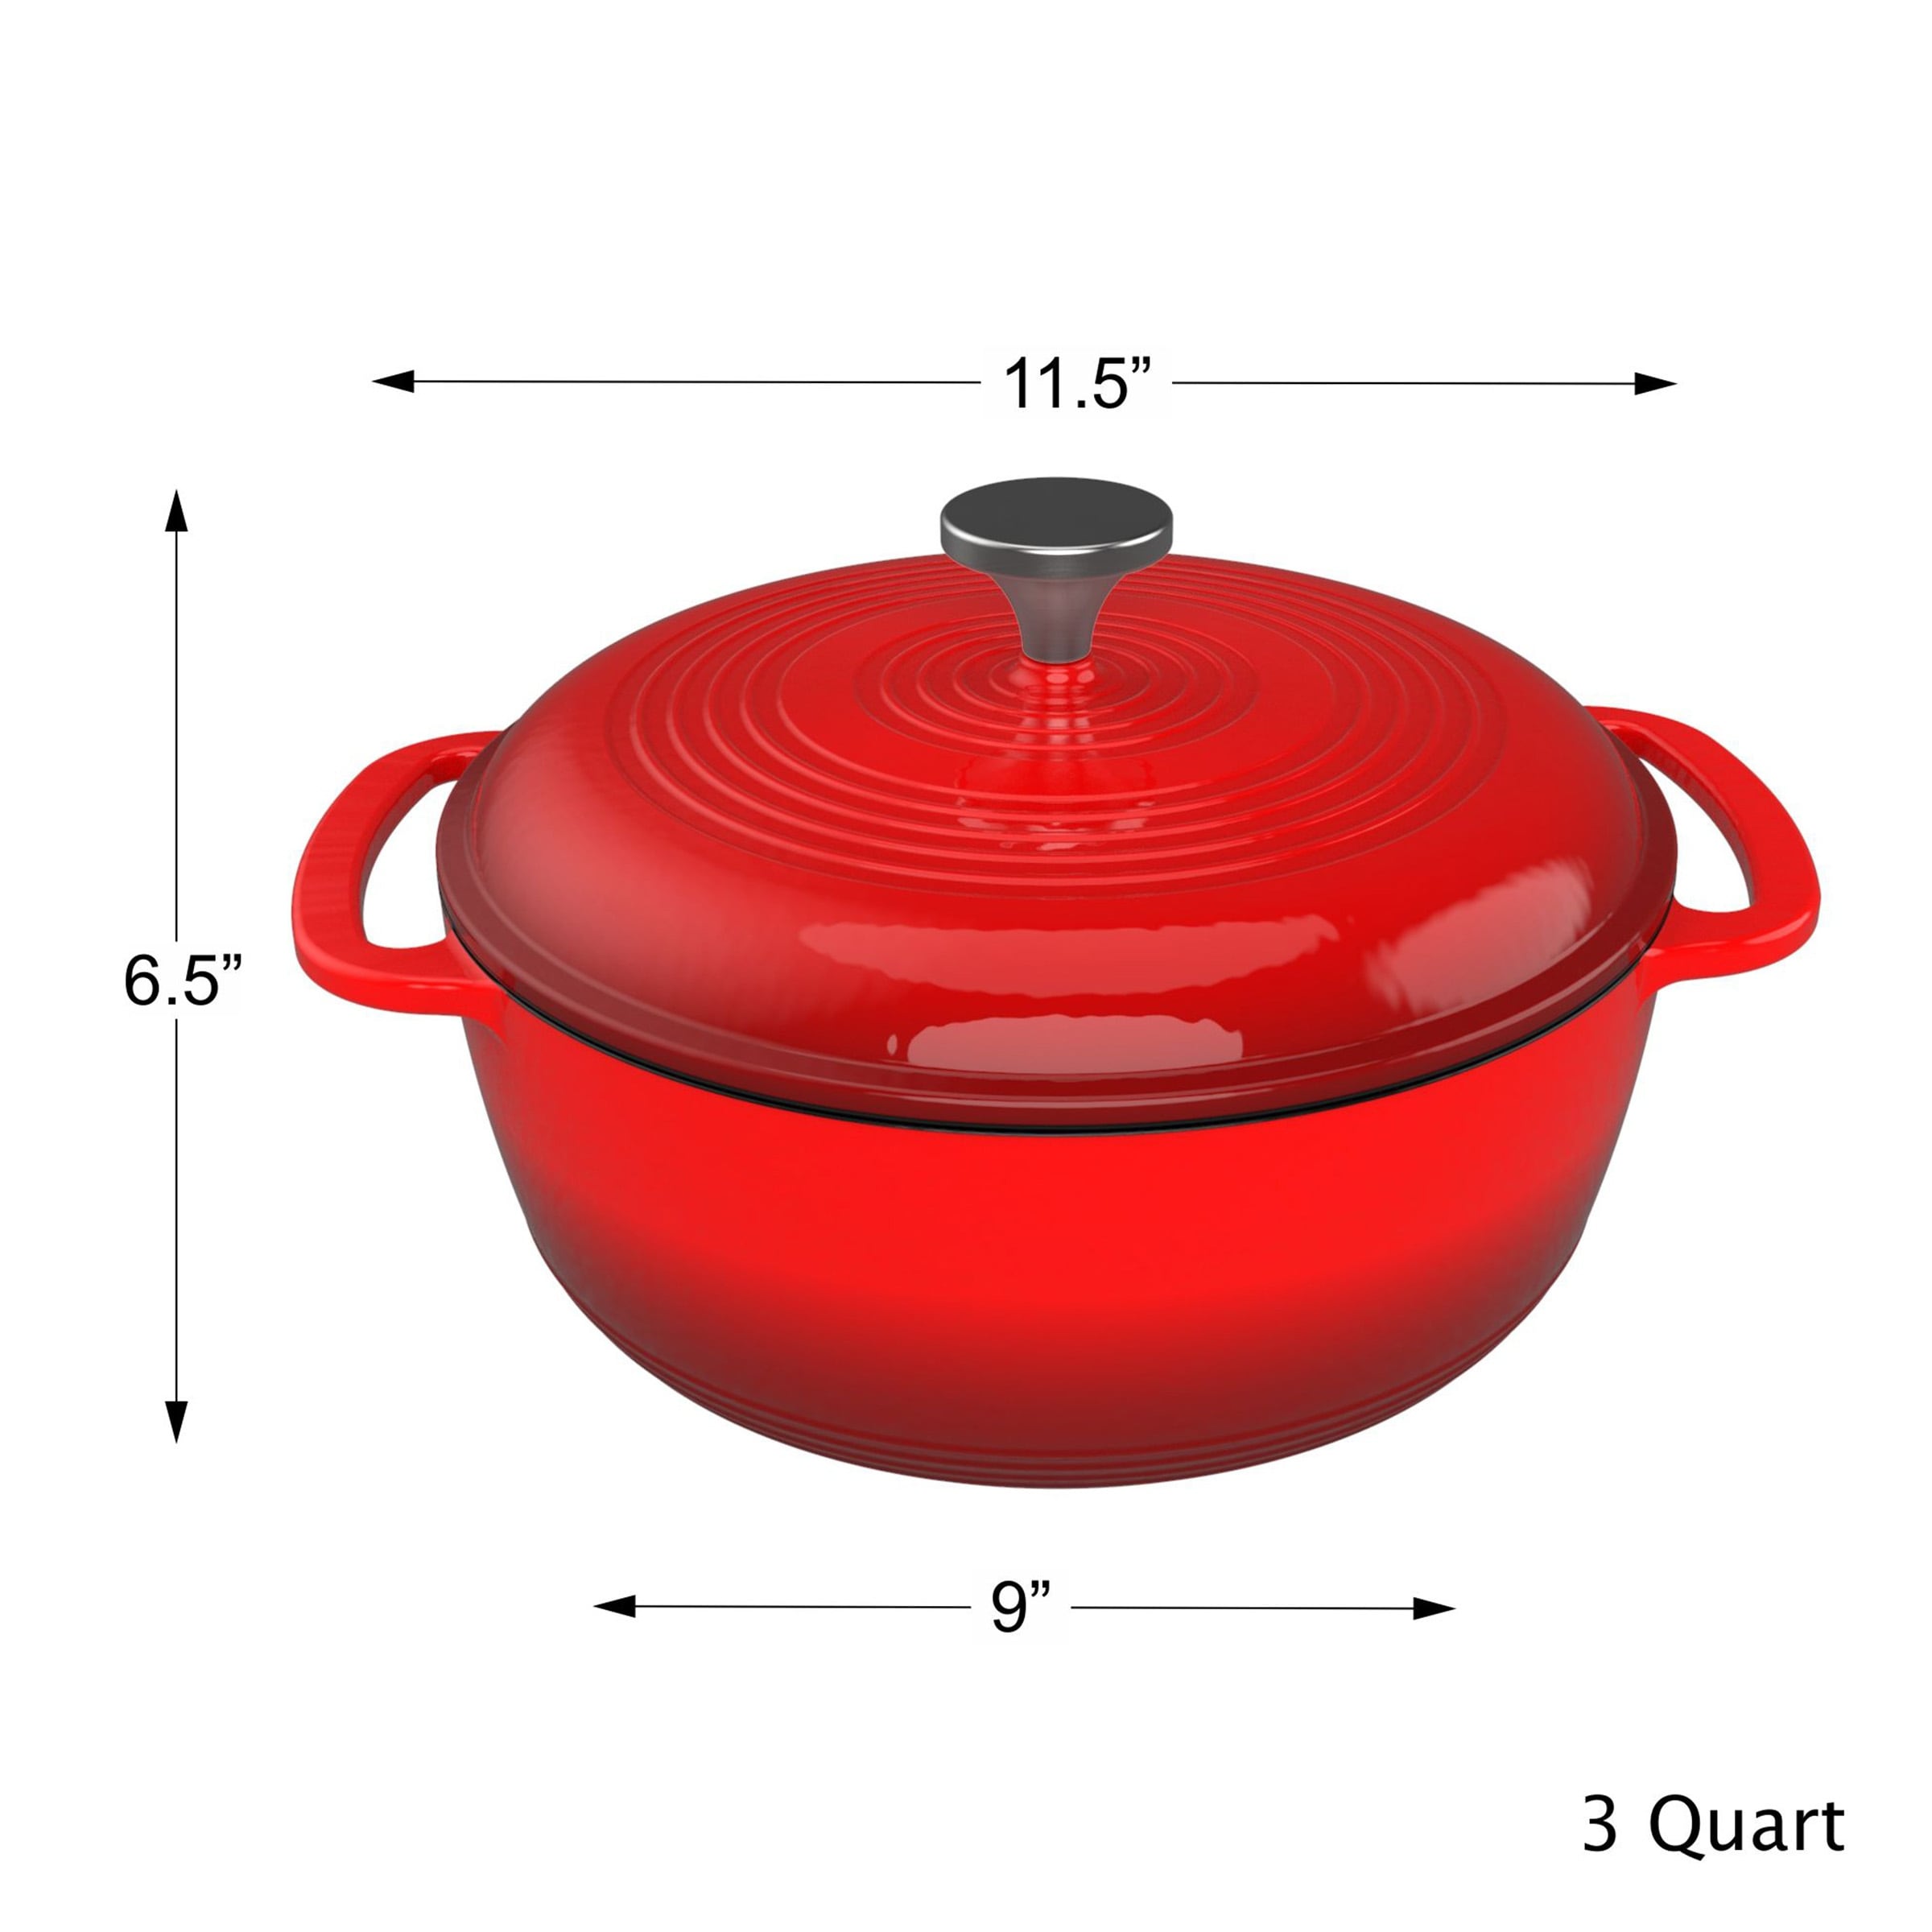 Potted Pans Enamel Cast Iron Dutch Oven - Ceramic 6 qt Dutch Oven Pot with Lid